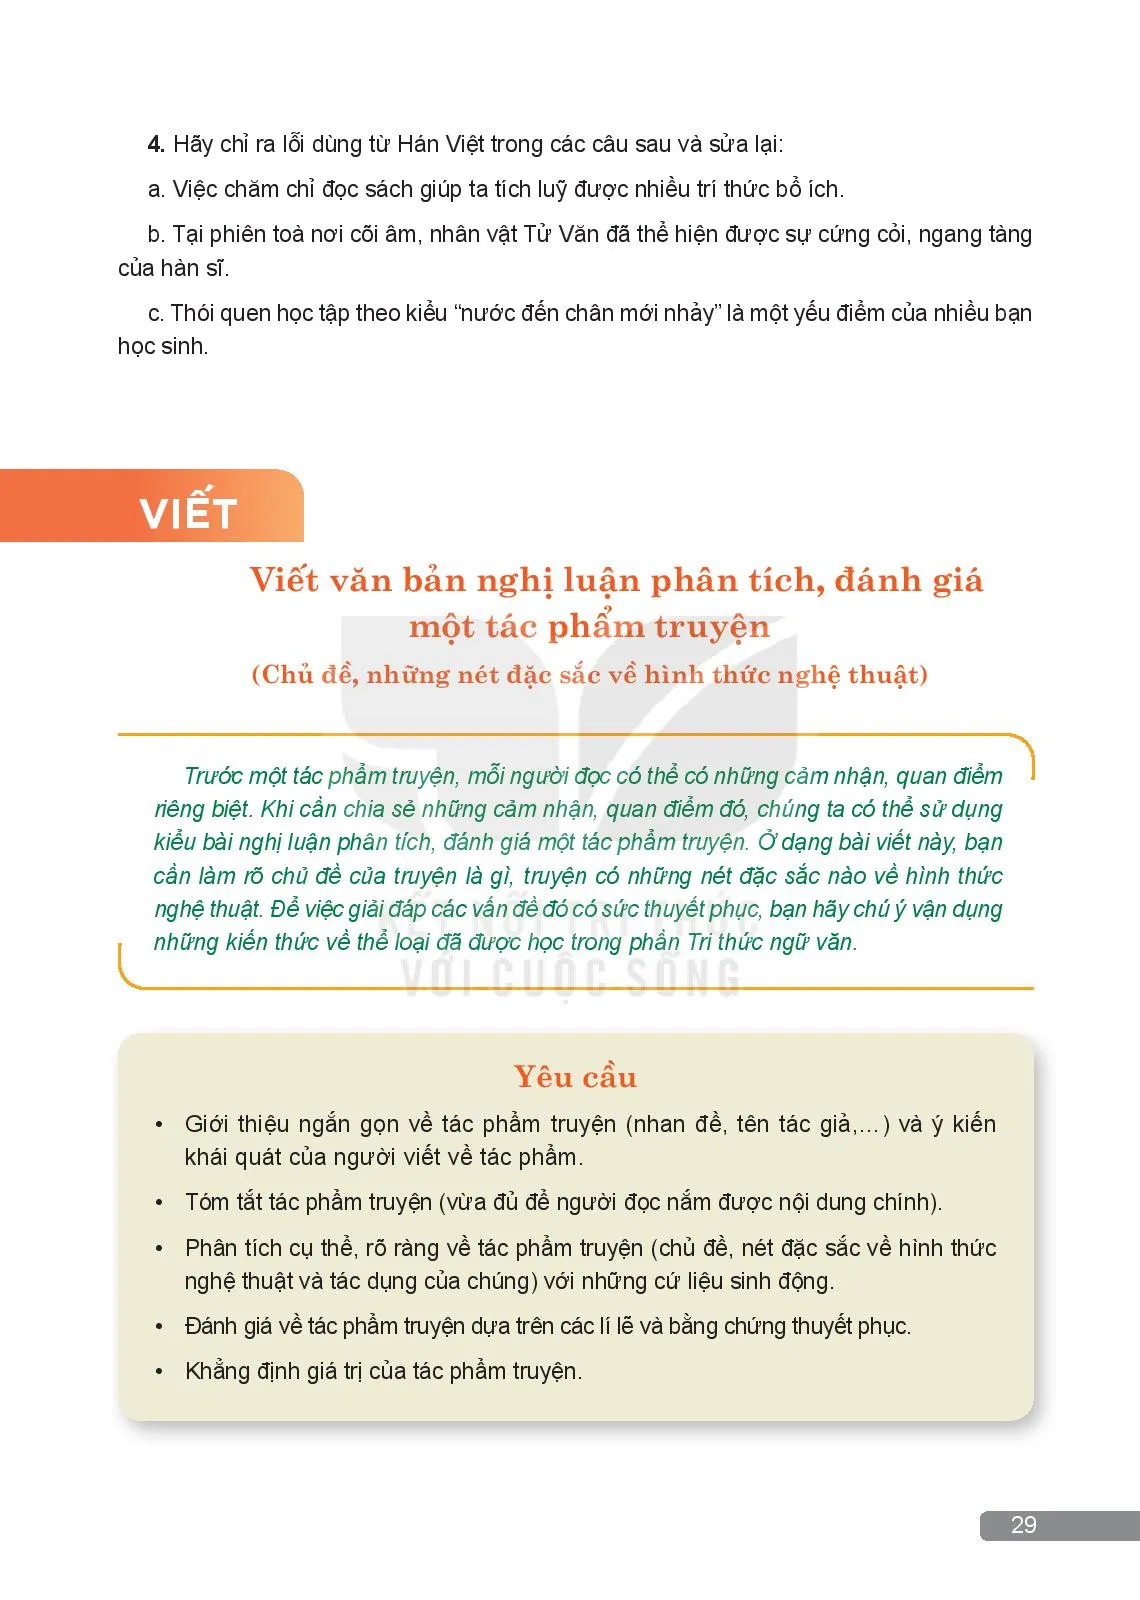 Thực hành tiếng Việt: Sử dụng từ Hán Việt